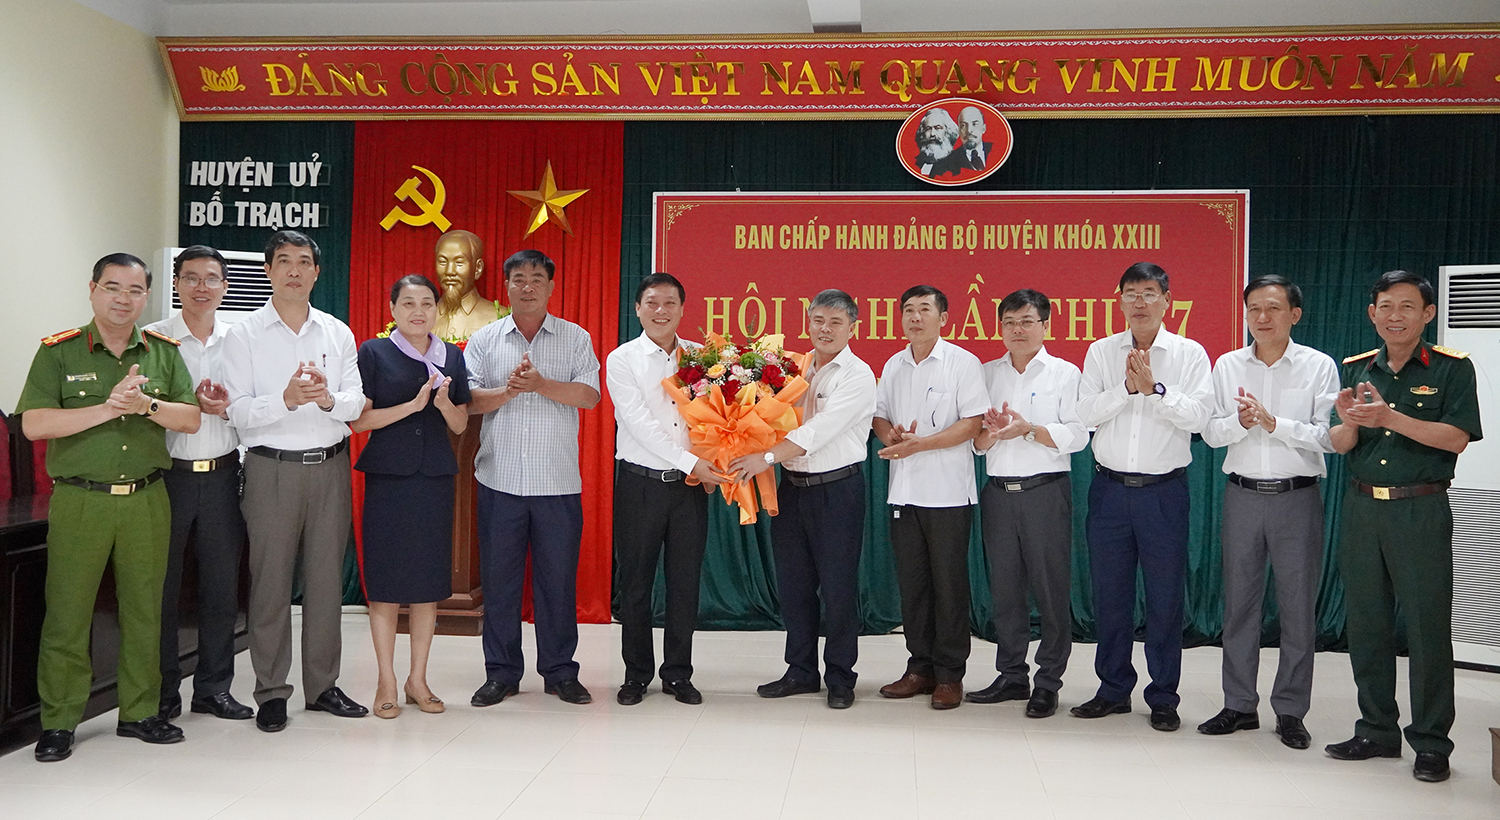 Đồng chí Nguyễn Ngọc Tuấn được bầu giữ chức vụ Bí thư Huyện ủy Bố Trạch